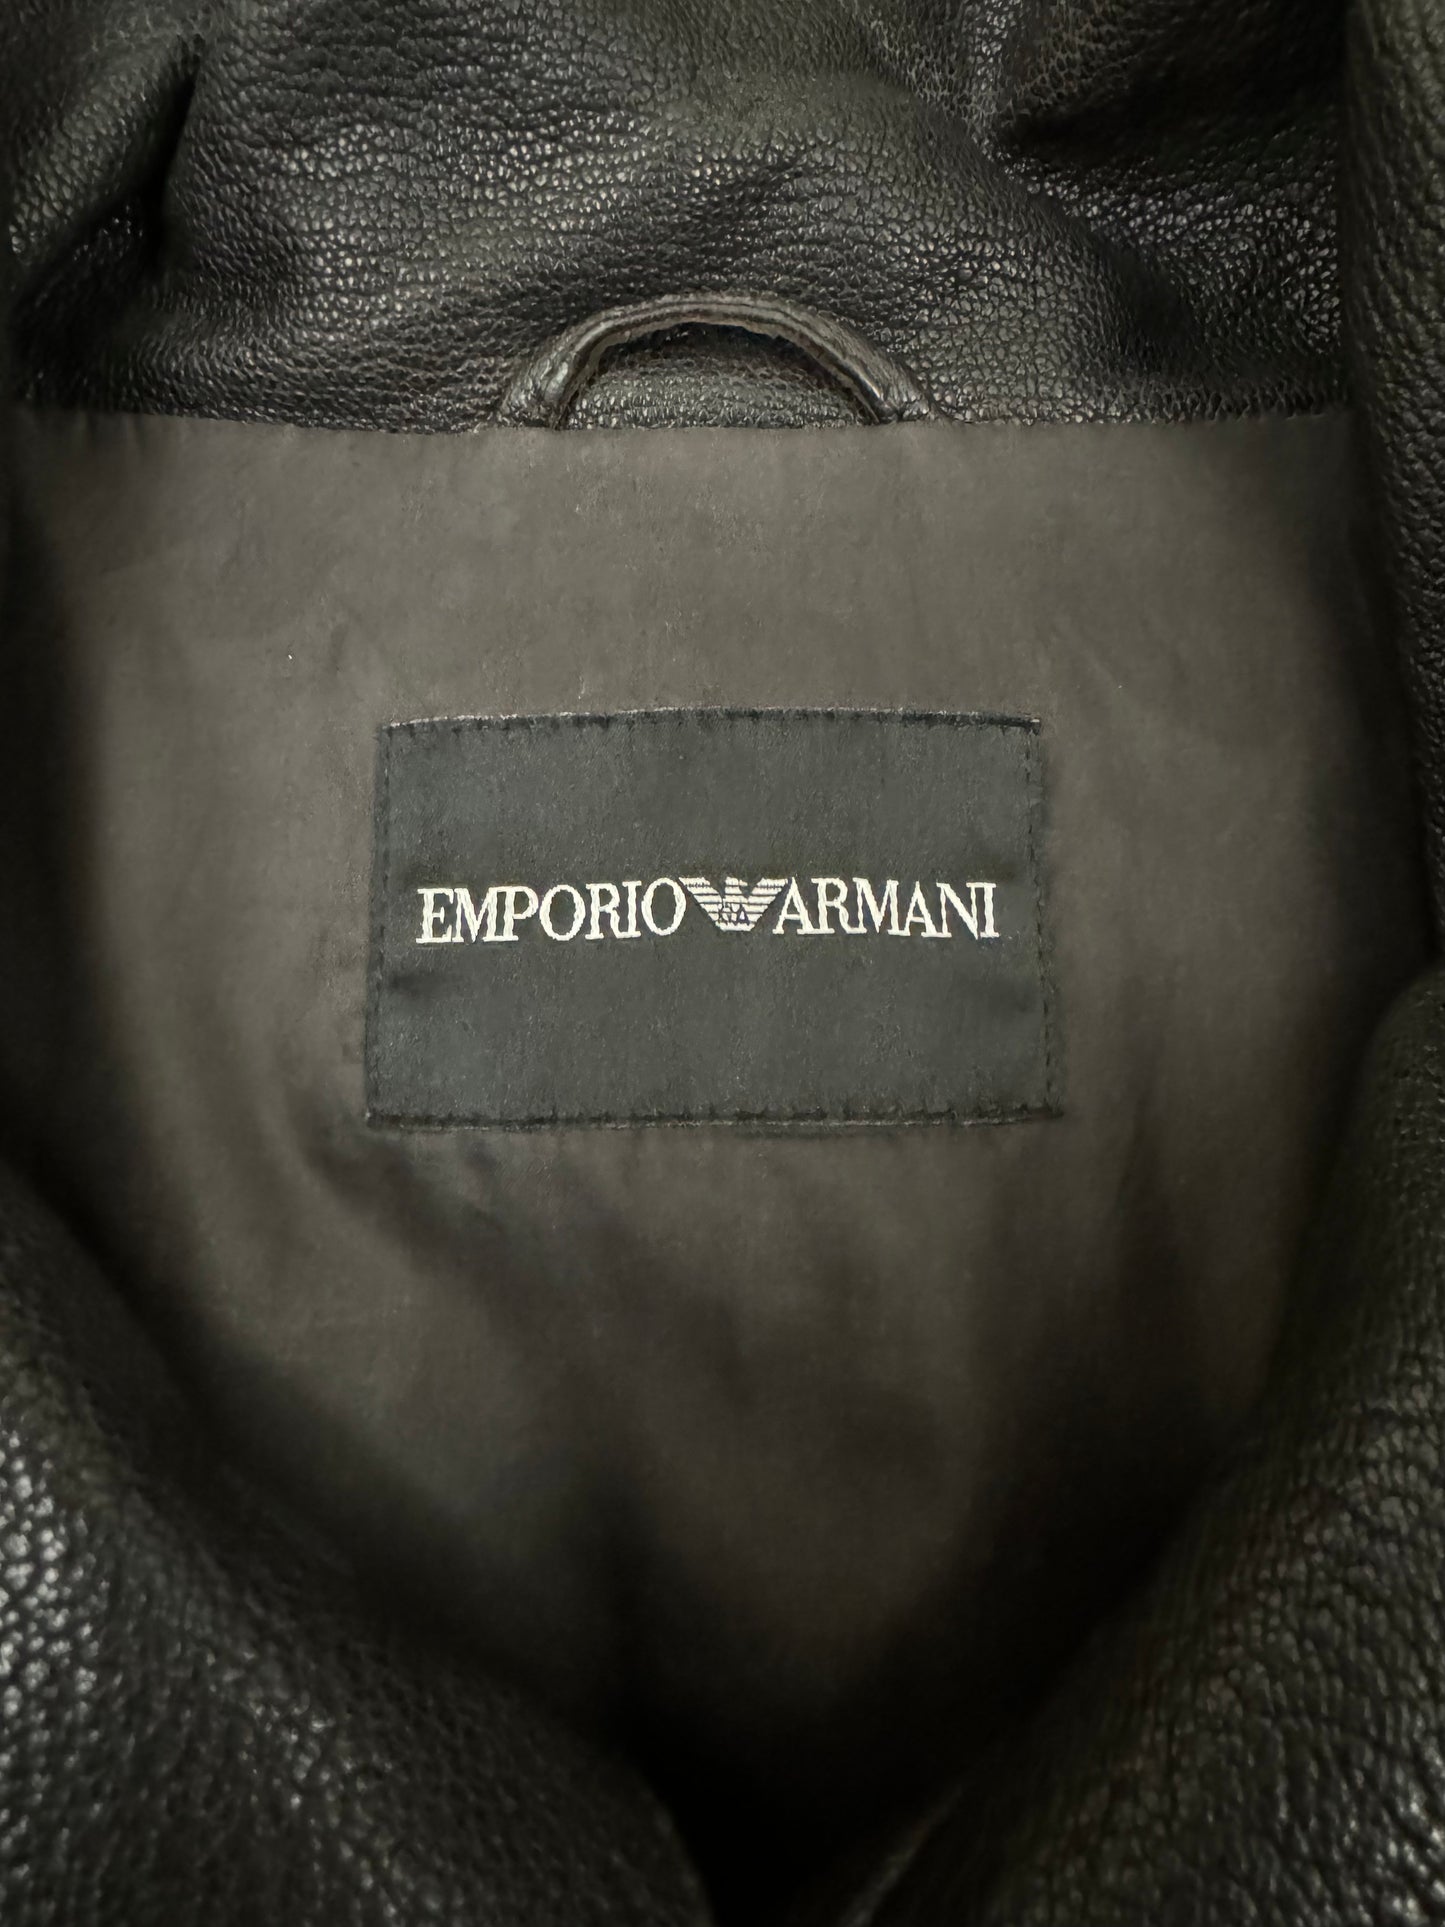 FW2008 Emporio Armani Bauhaus Leather Jacket (S/M)